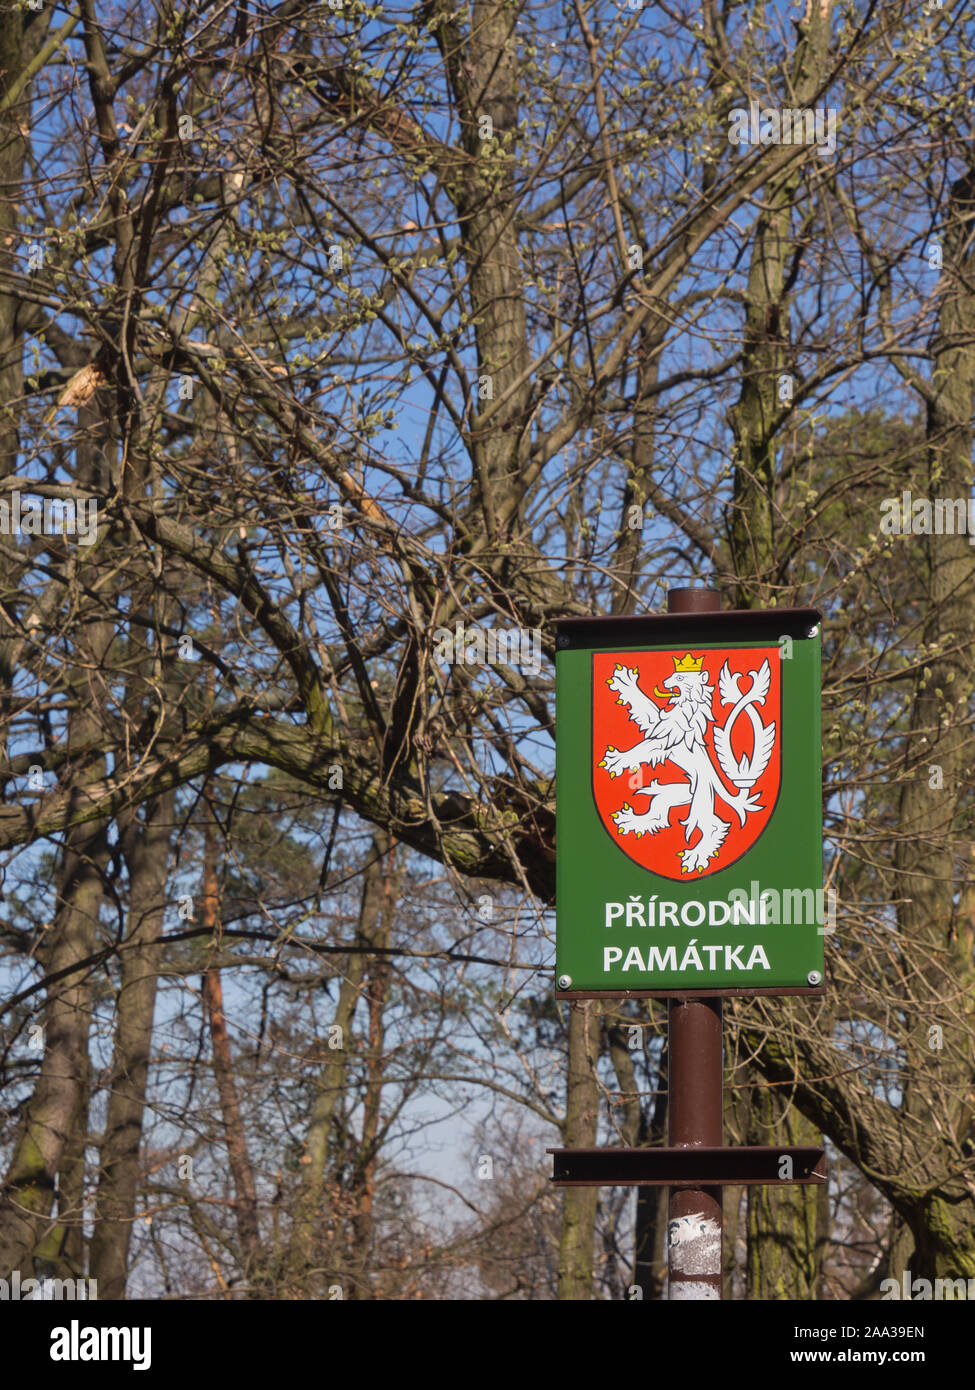 Prirodní památka, amtliche Zeichen in Czechi, d. h. ein Naturdenkmal, hier in der Ďáblický háj Wald in Prag Tschechische Republik platziert Stockfoto